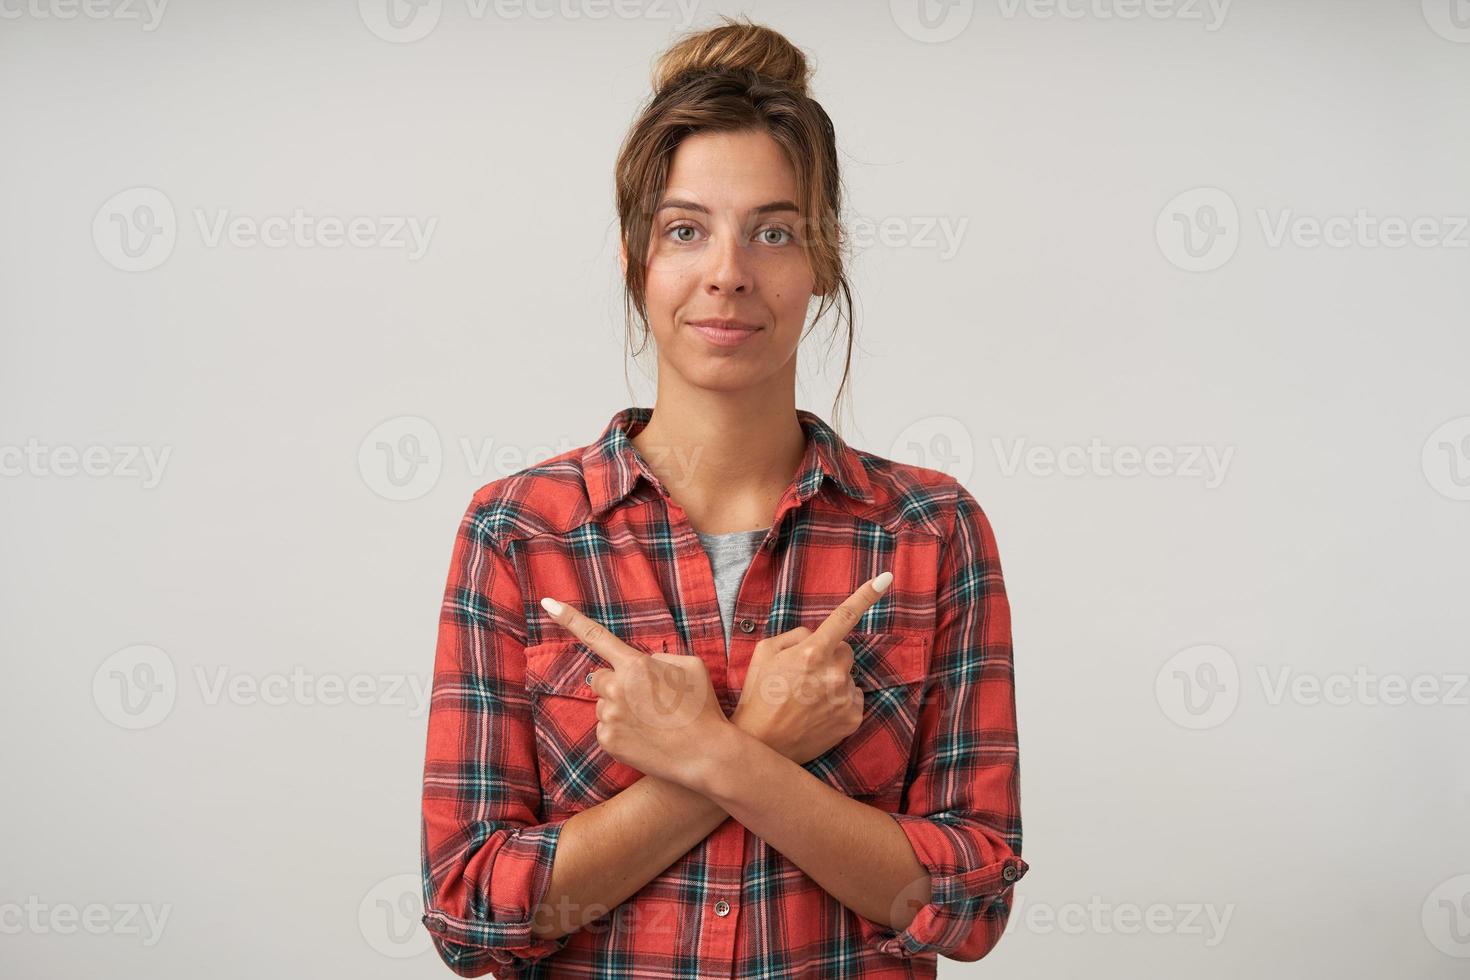 Jonge aantrekkelijke vrouw die zich voordeed op een witte achtergrond met gekruiste handen op haar borst en met wijsvingers naar verschillende kanten wijst, kijkend naar de camera met kalm gezicht foto